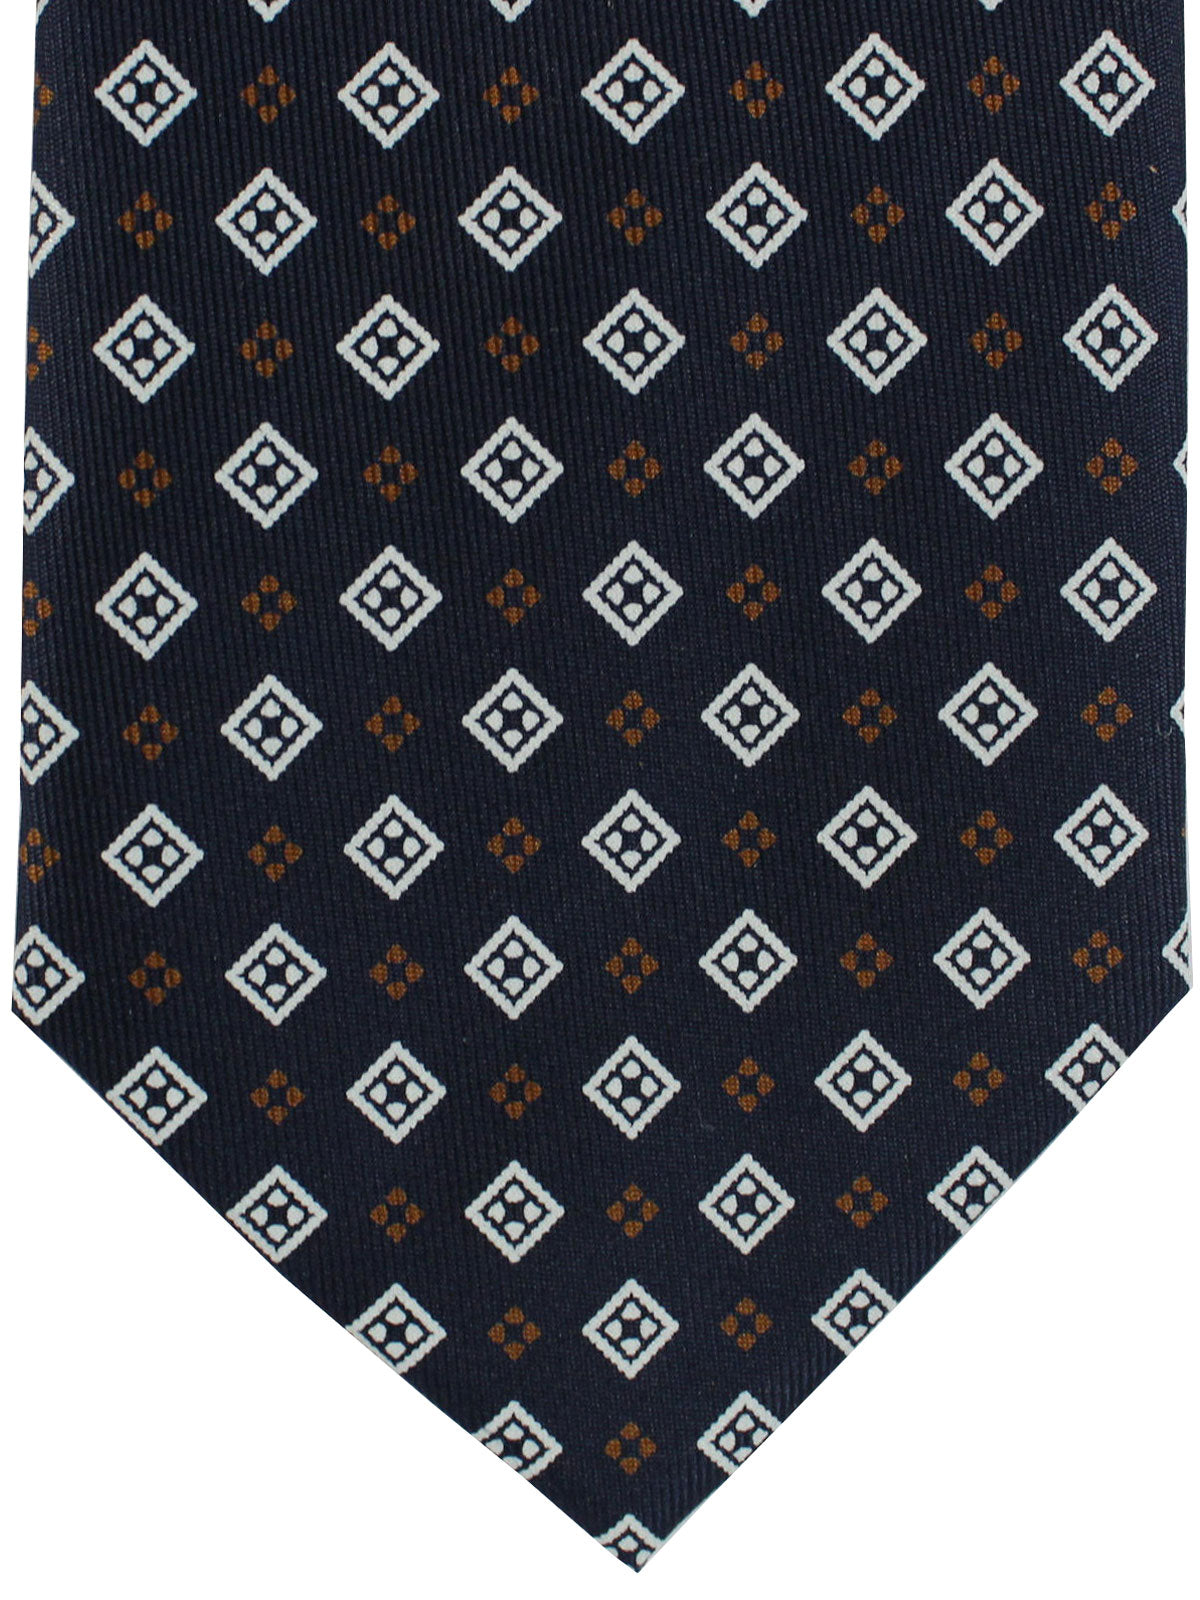 E. Marinella Silk Tie Black Brown Geometric